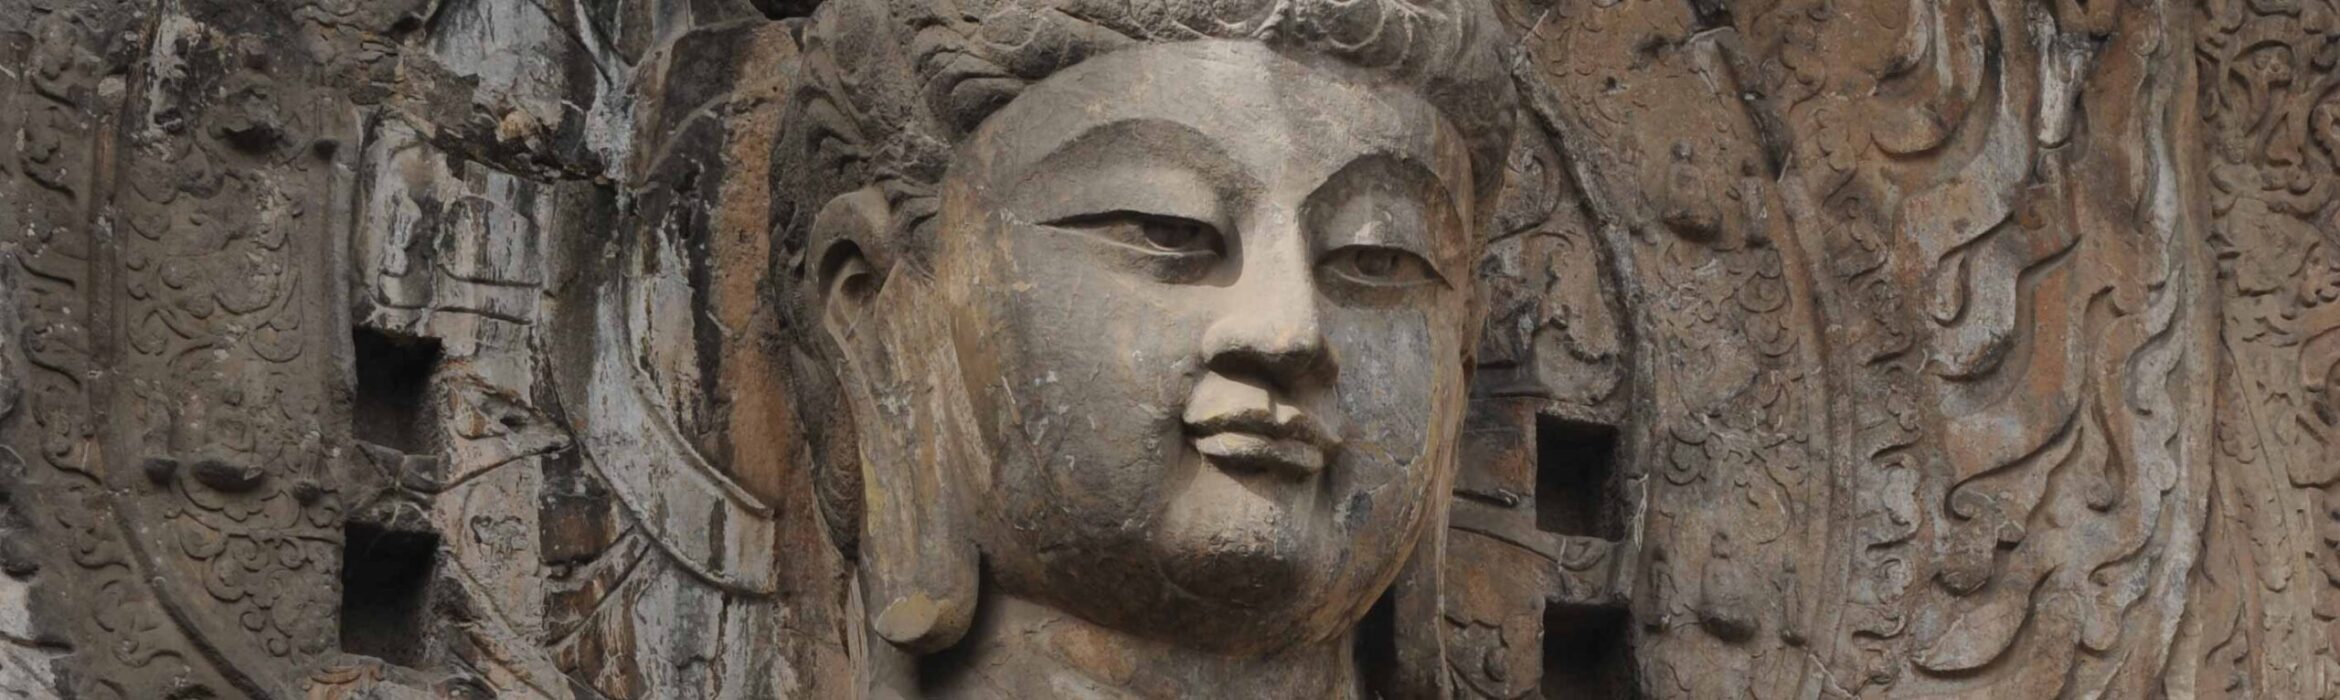 Third Volume of “Hualin Series On Buddhist Studies” (Chinese)